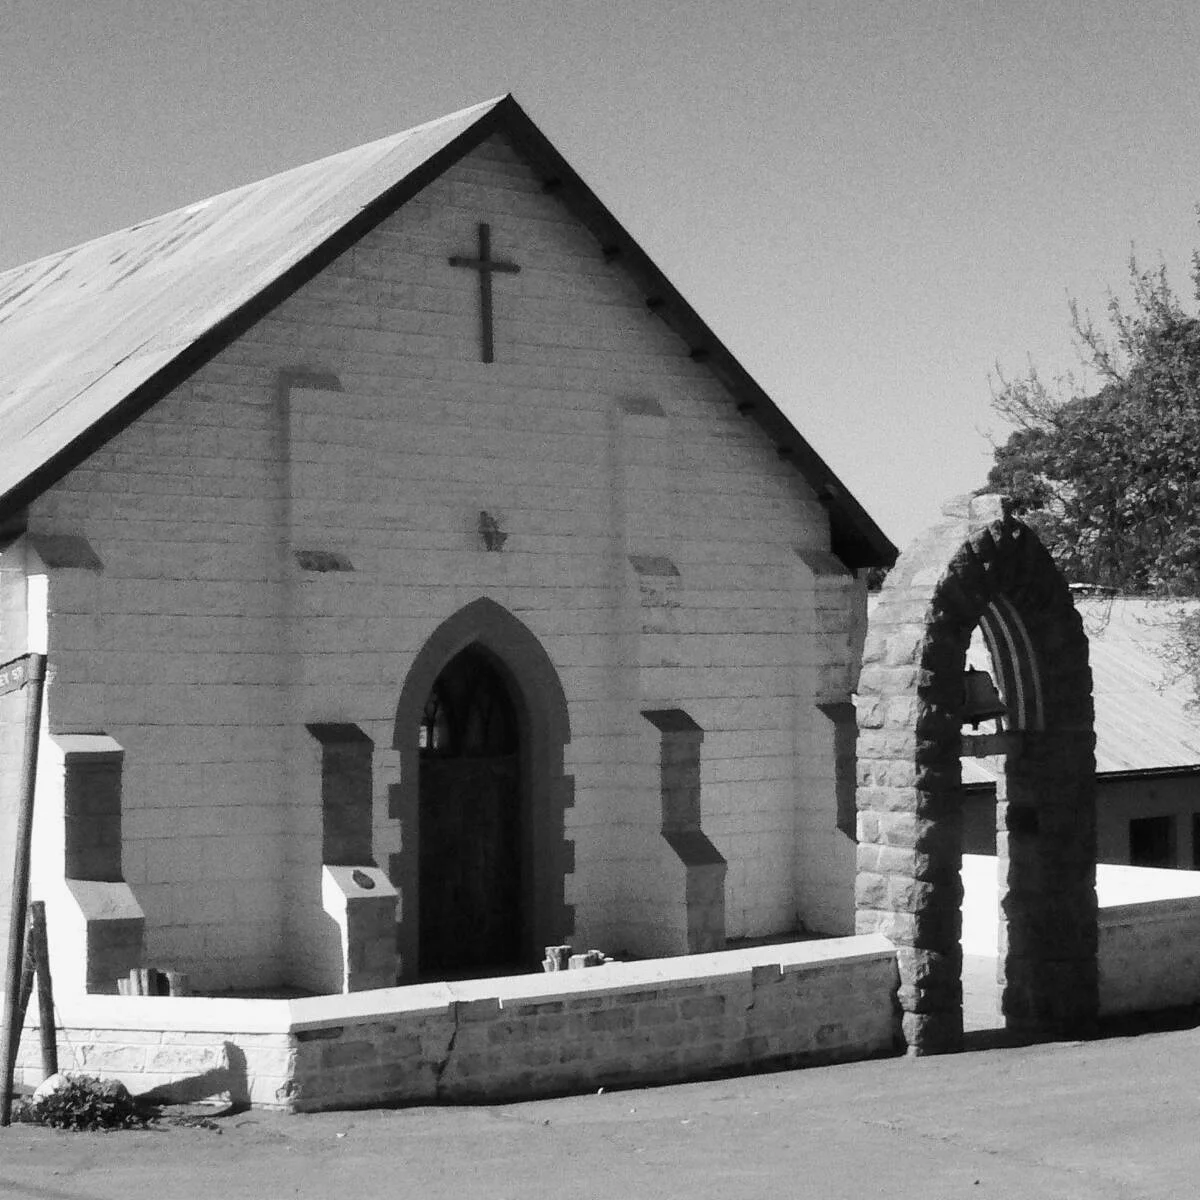  2015/04/Methodist_Mission_Church_Leliefontein.jpg 